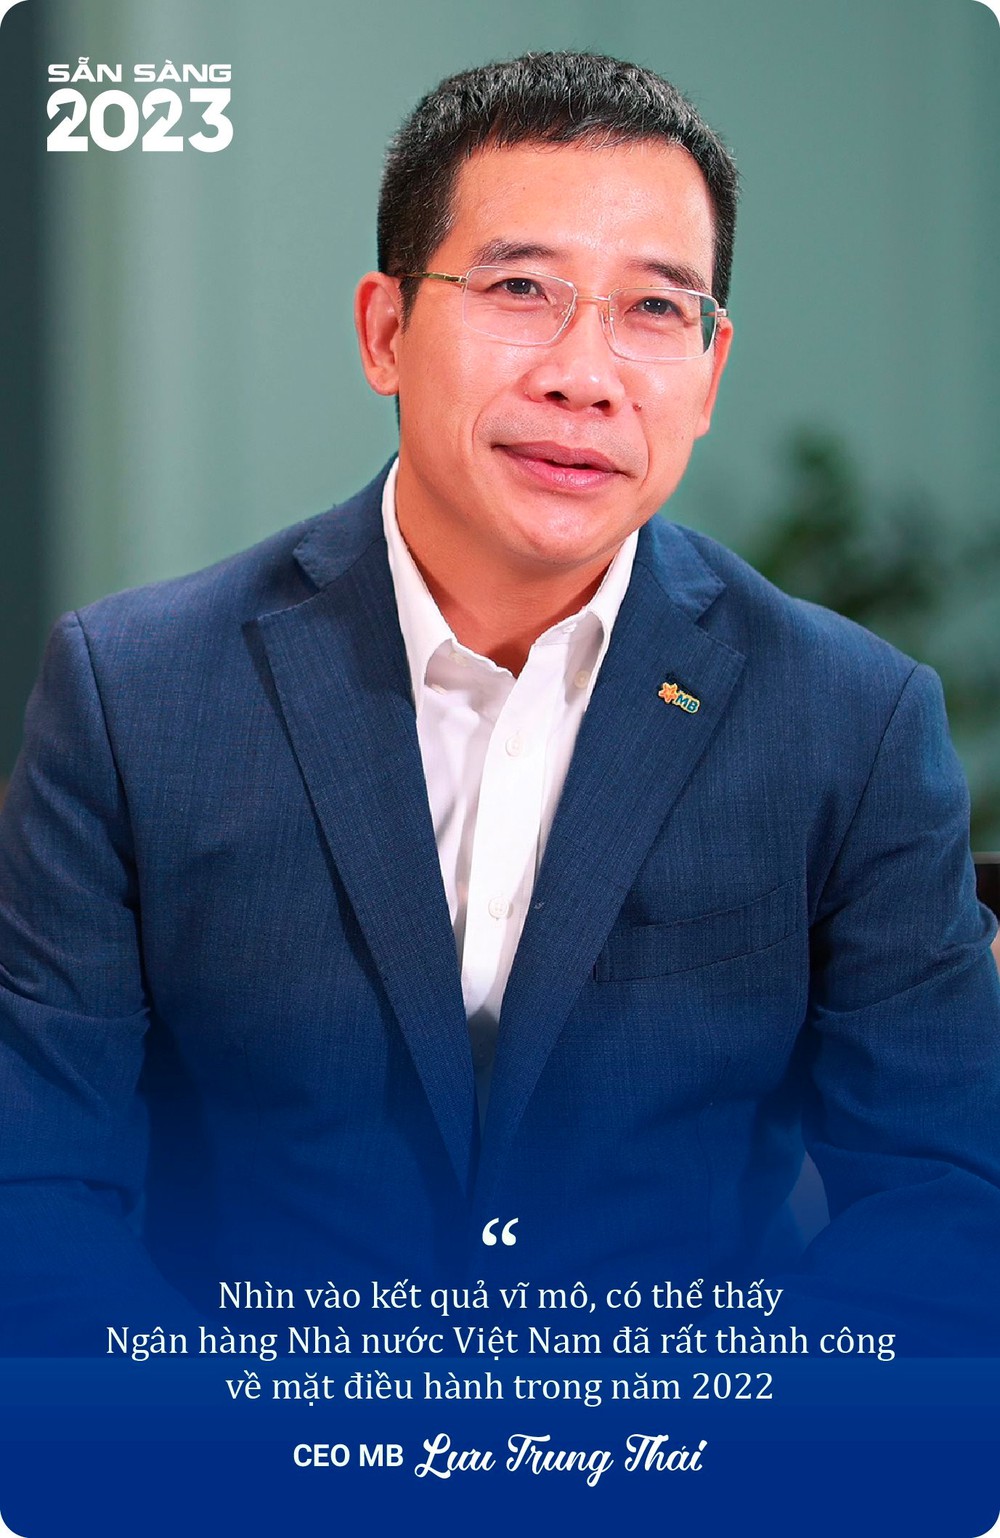 CEO MB Lưu Trung Thái: 2023 sẽ là năm khó, mong muốn lớn nhất của tôi là kinh tế tăng trưởng ổn định - Ảnh 3.